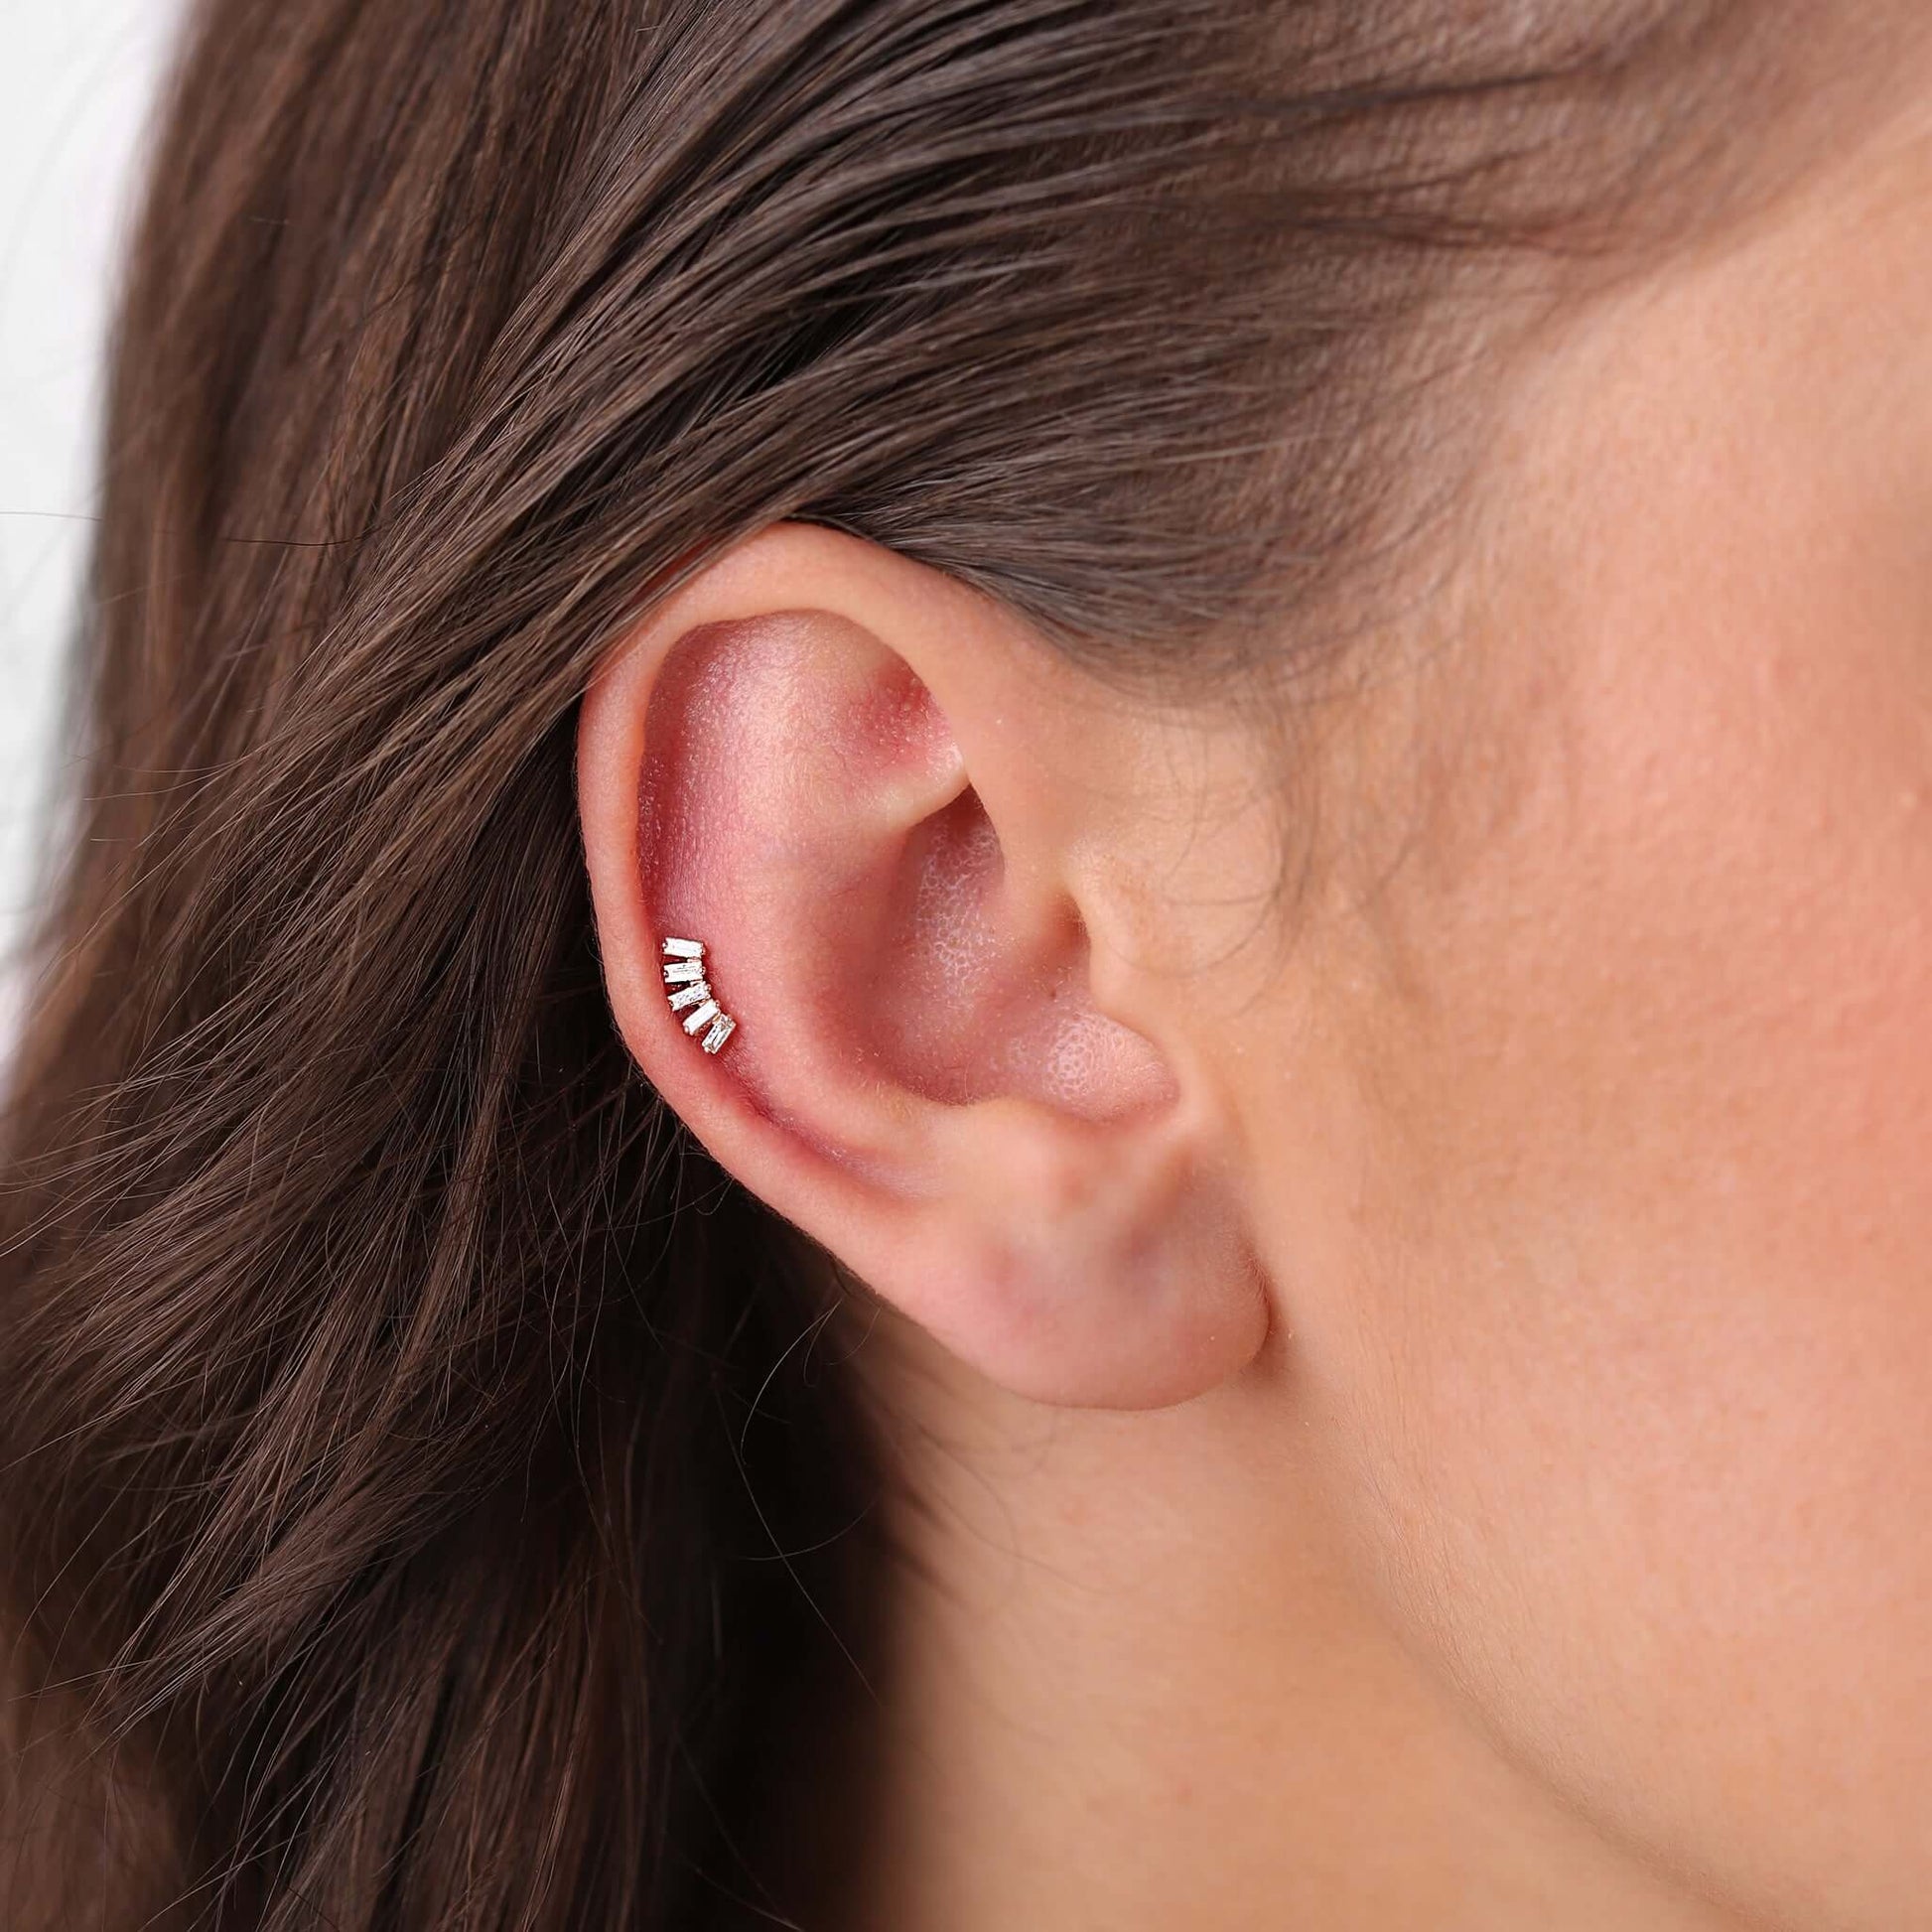 Gilda Jewelry Baguette Studs | Diamond Earrings | 14K Gold - earrings Zengoda Shop online from Artisan Brands